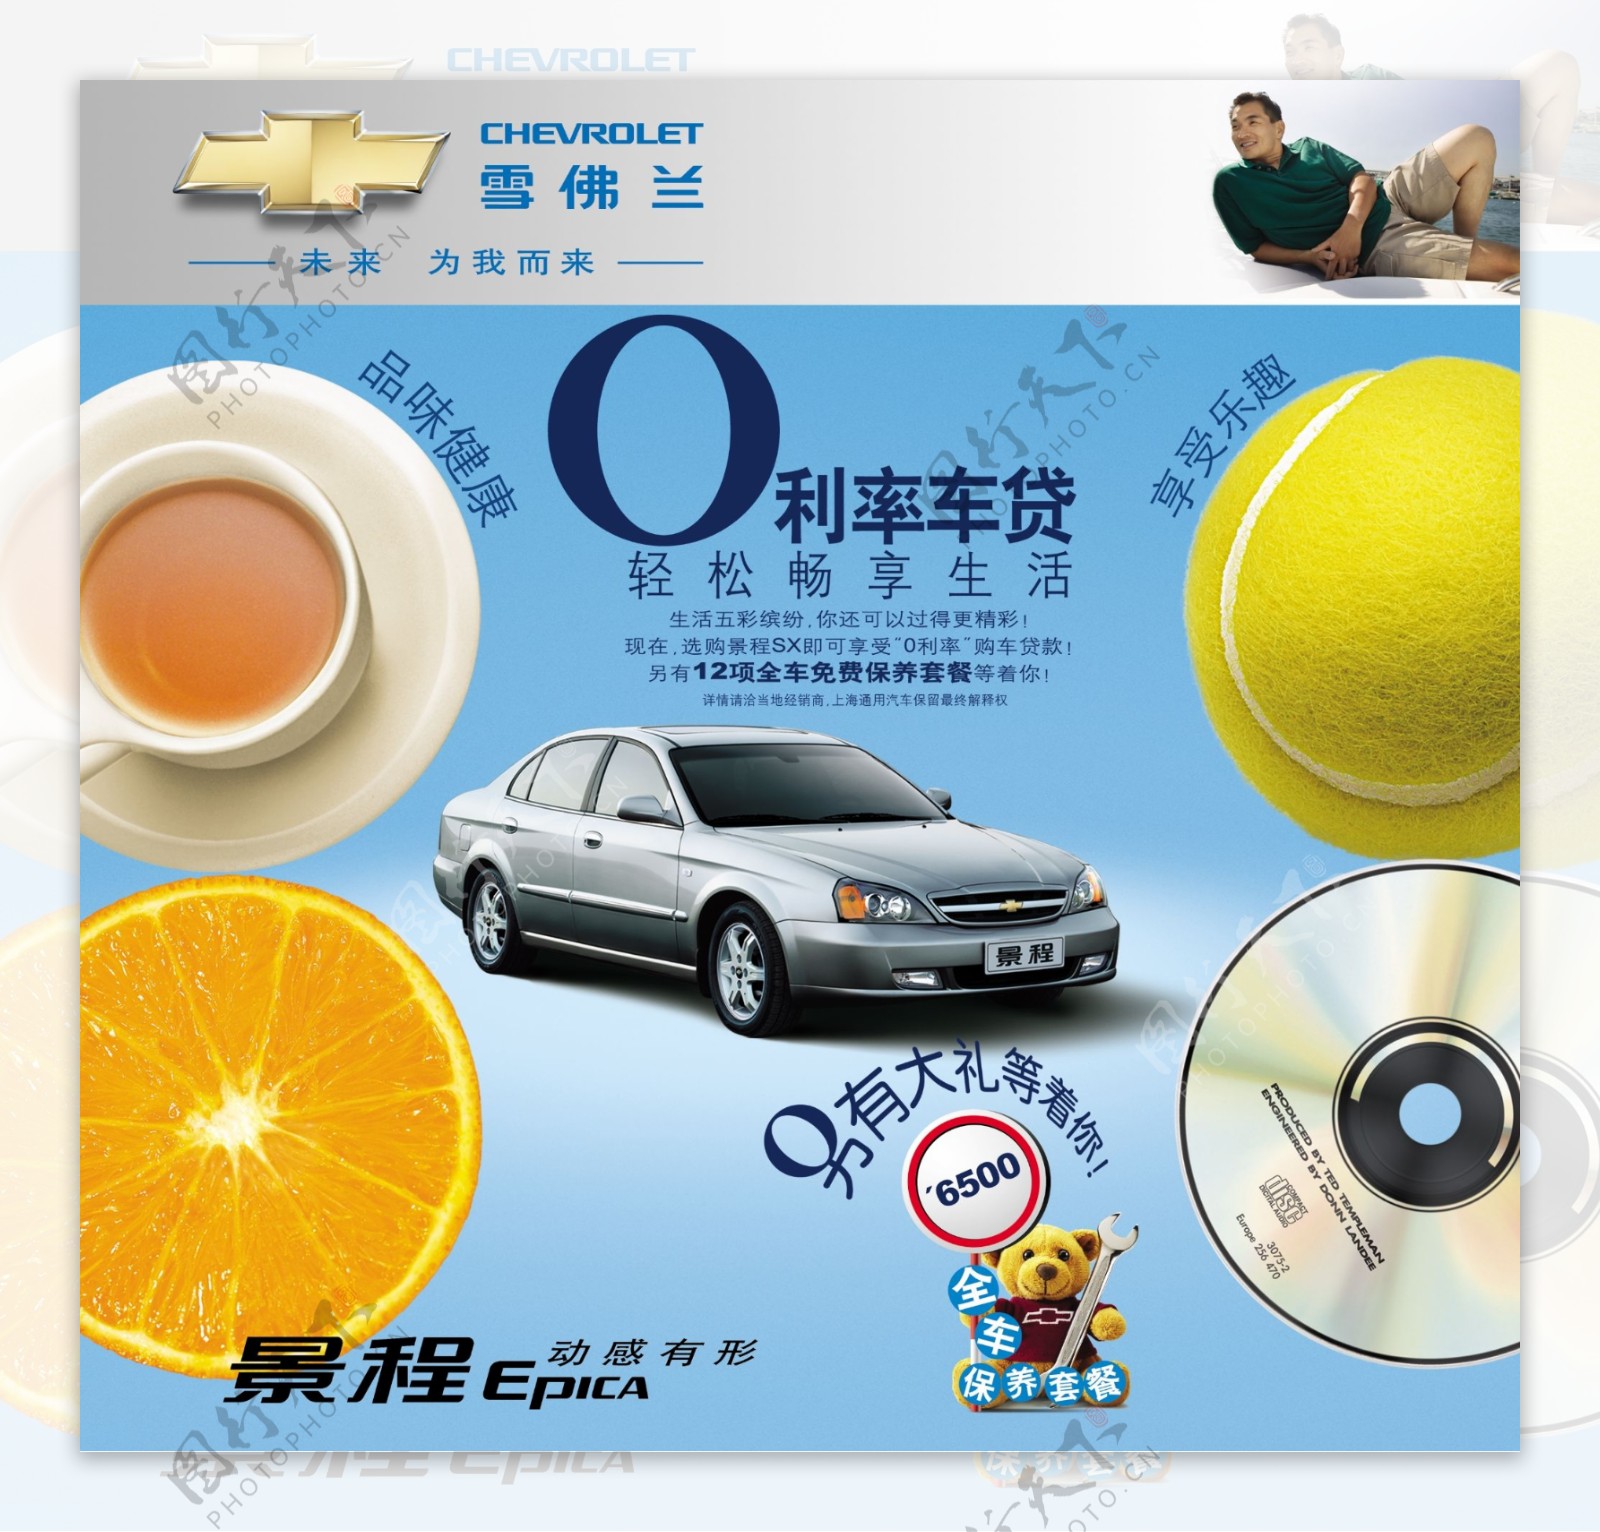 龙腾广告平面广告PSD分层素材源文件雪佛兰轿车跑车景程享受橙子棒球光碟品位健康